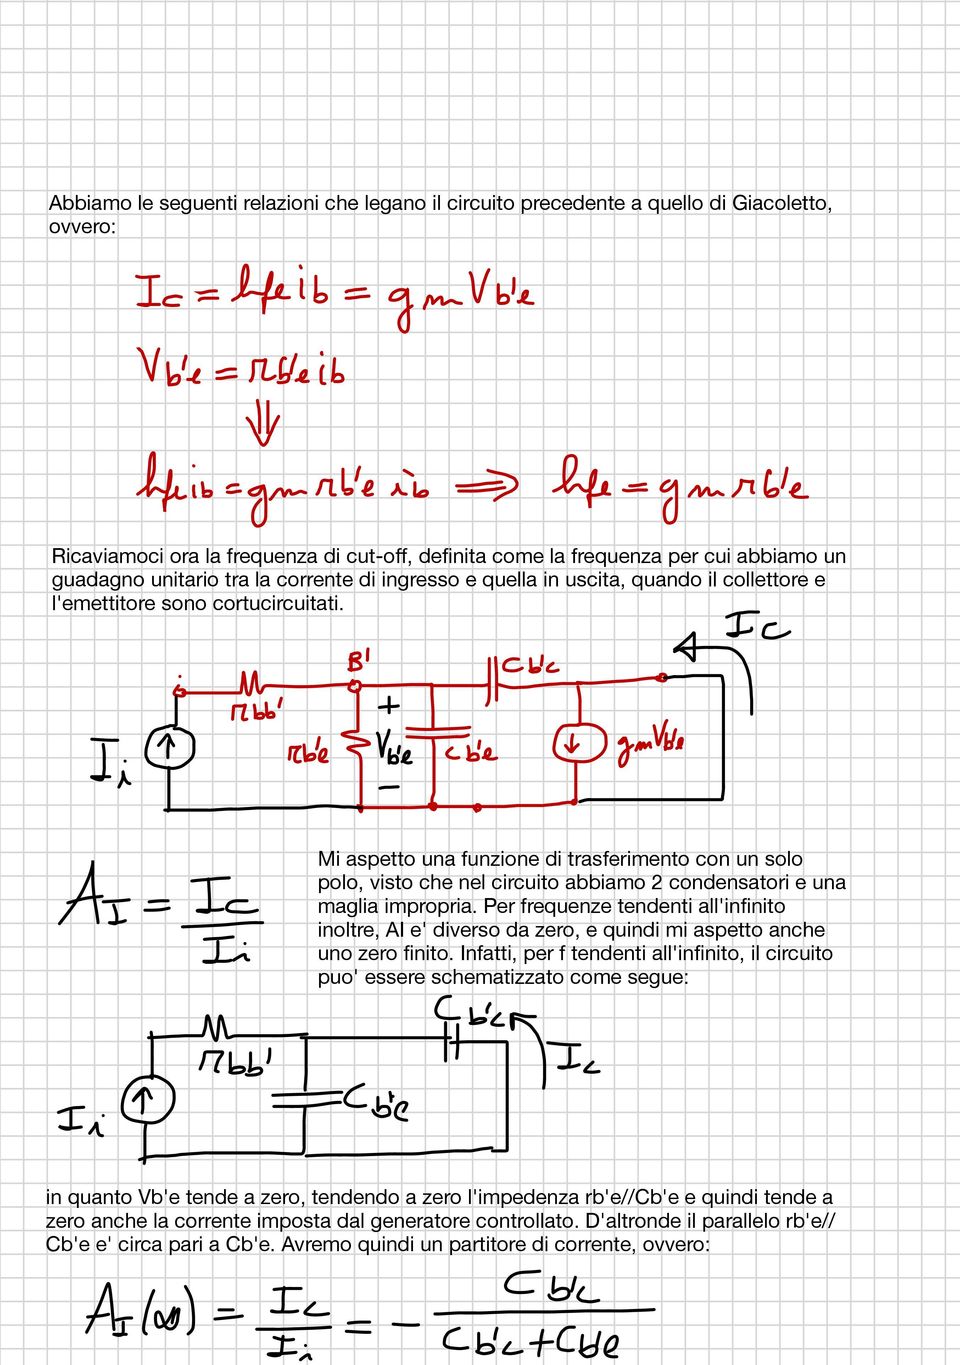 Mi aspetto una funzione di trasferimento con un solo polo, visto che nel circuito abbiamo 2 condensatori e una maglia impropria.